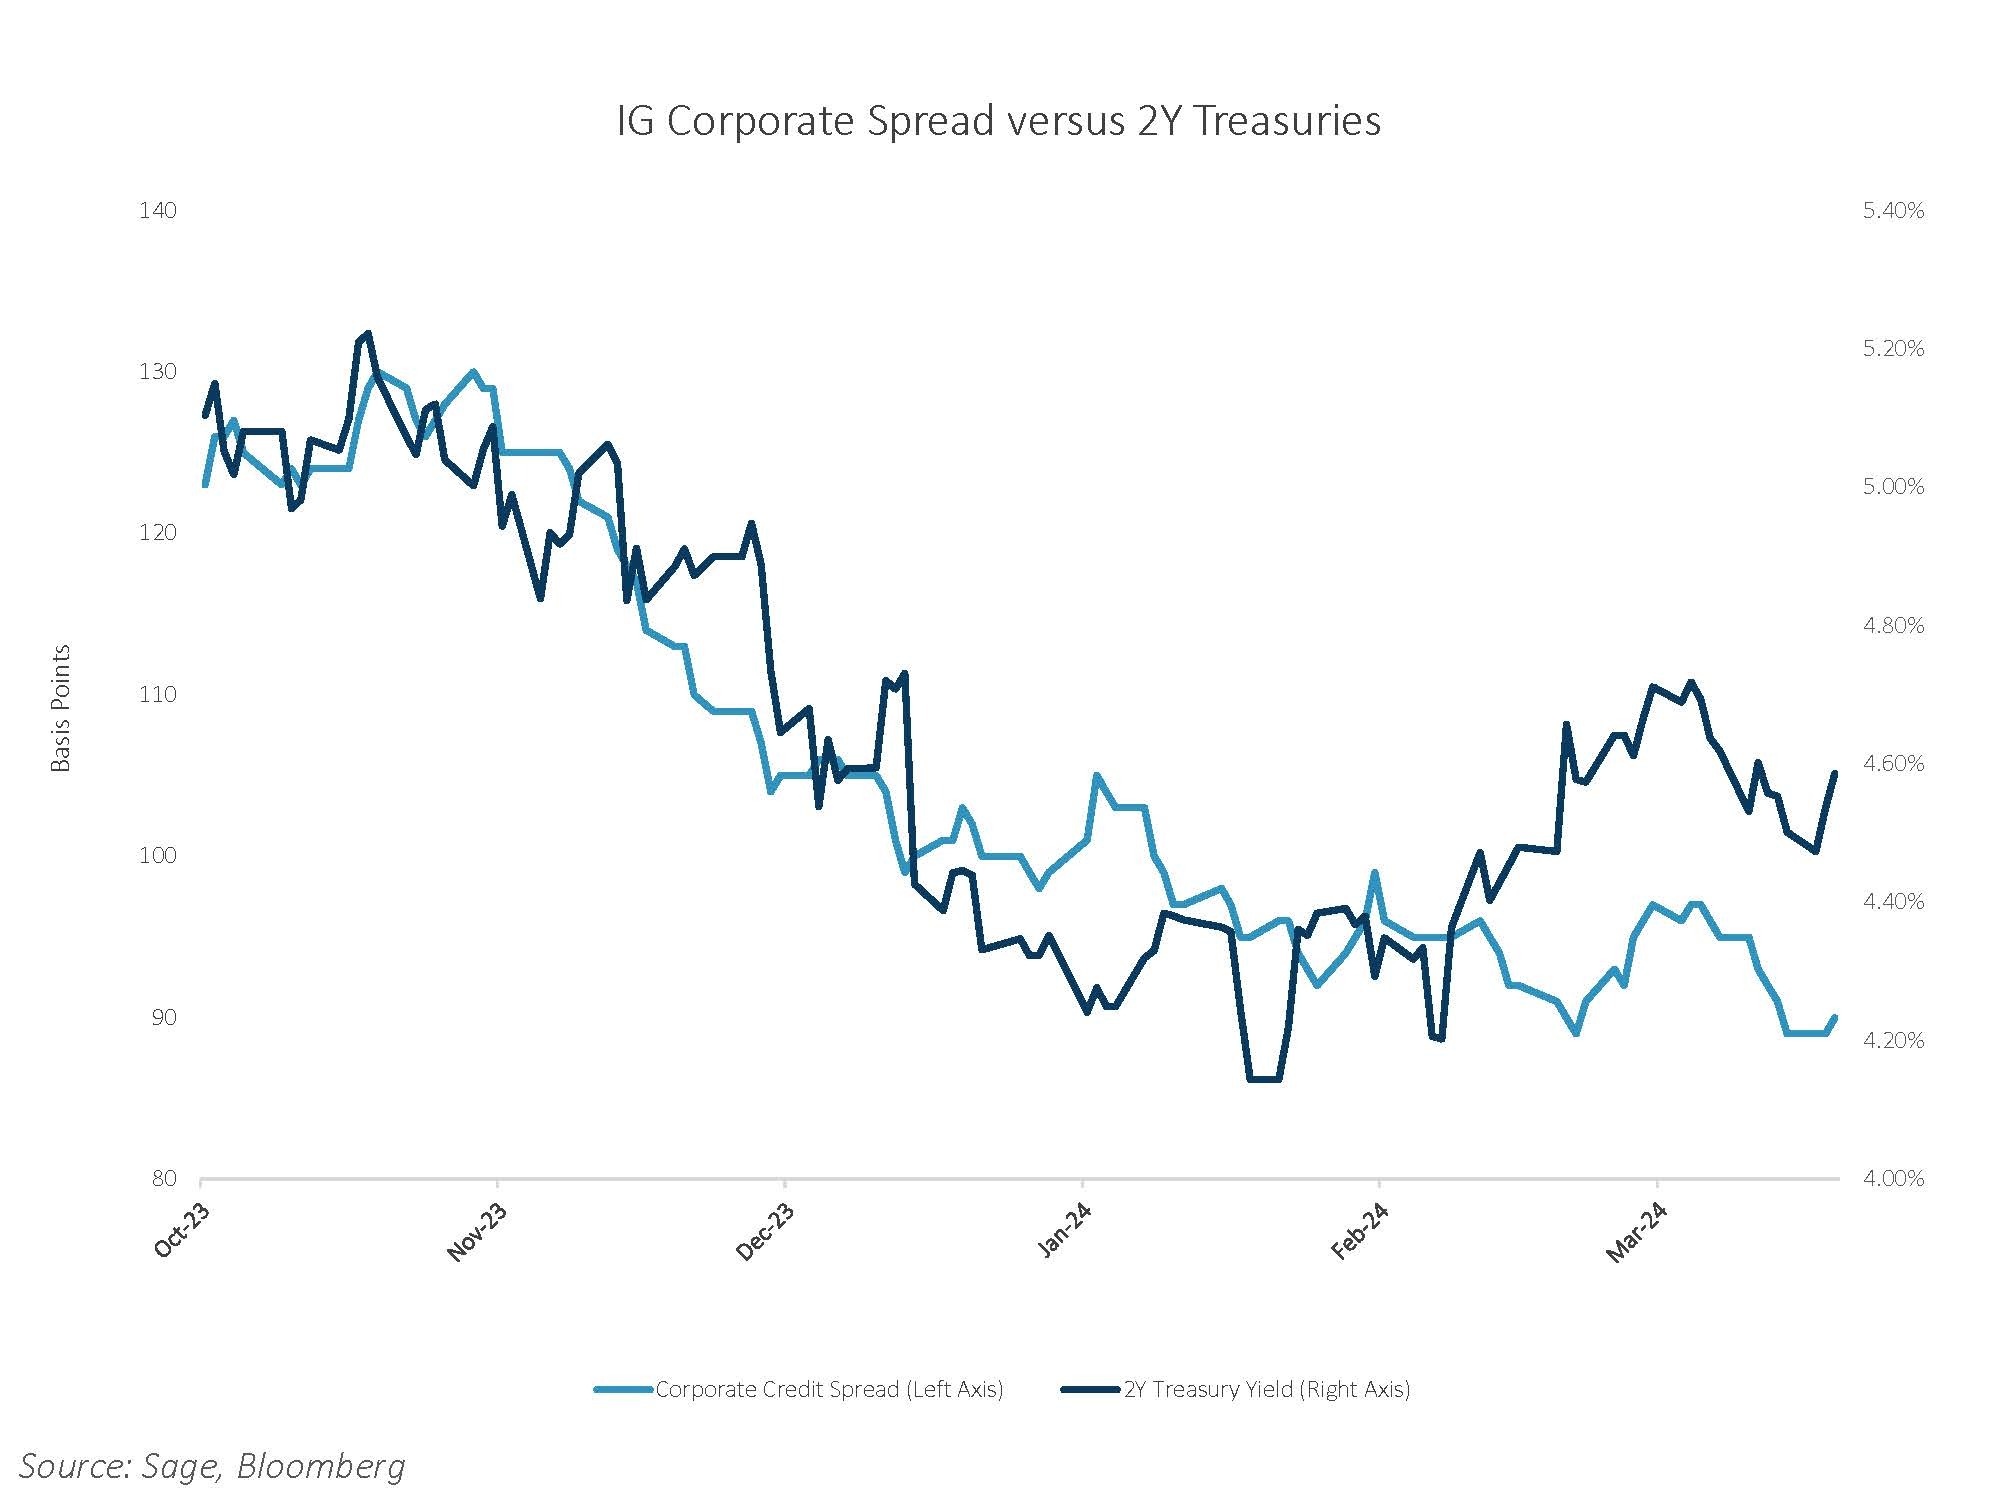 IG Corporate Spread vs 2Y Treasuries